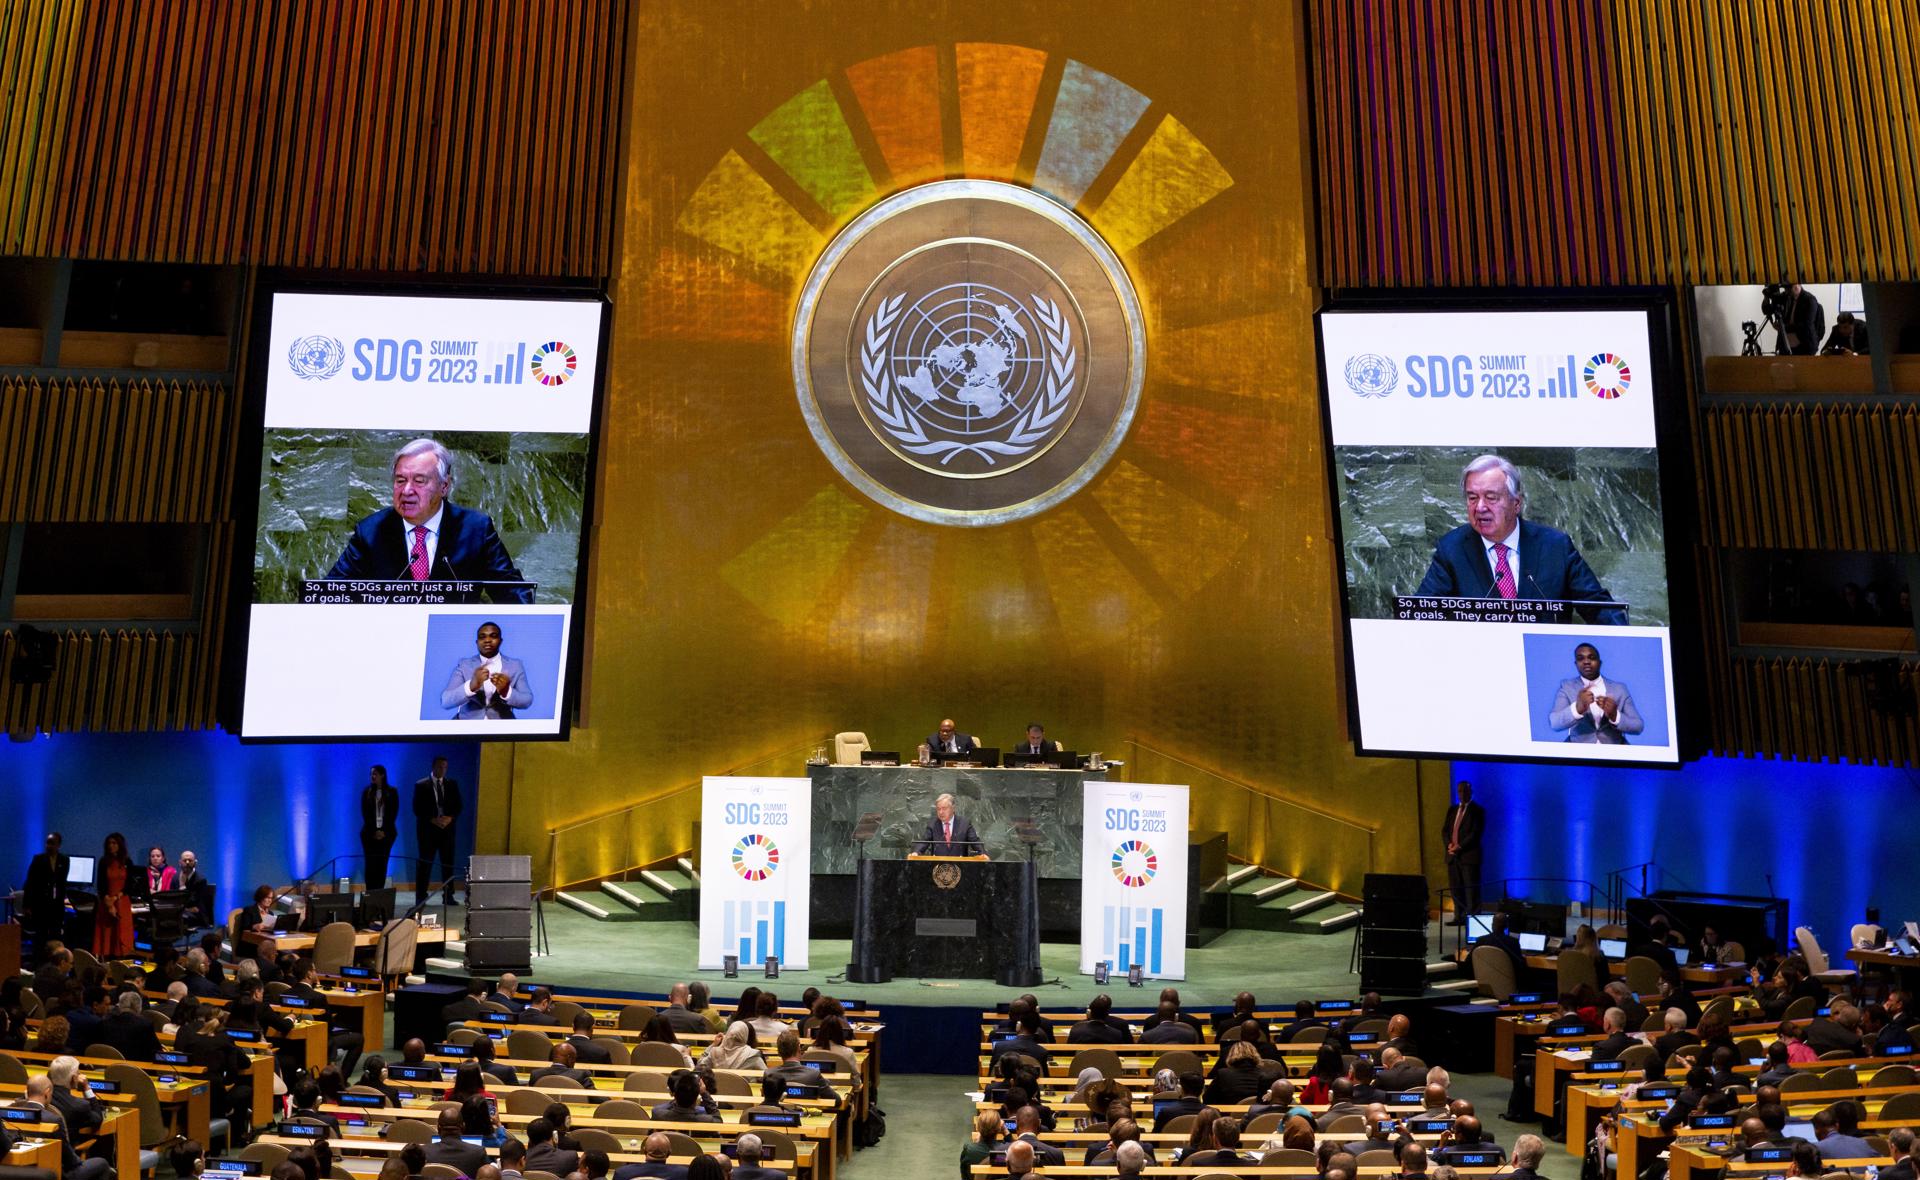 Guterres propone en la ONU nuevas instituciones mundiales basadas en la equidad y la solidaridad